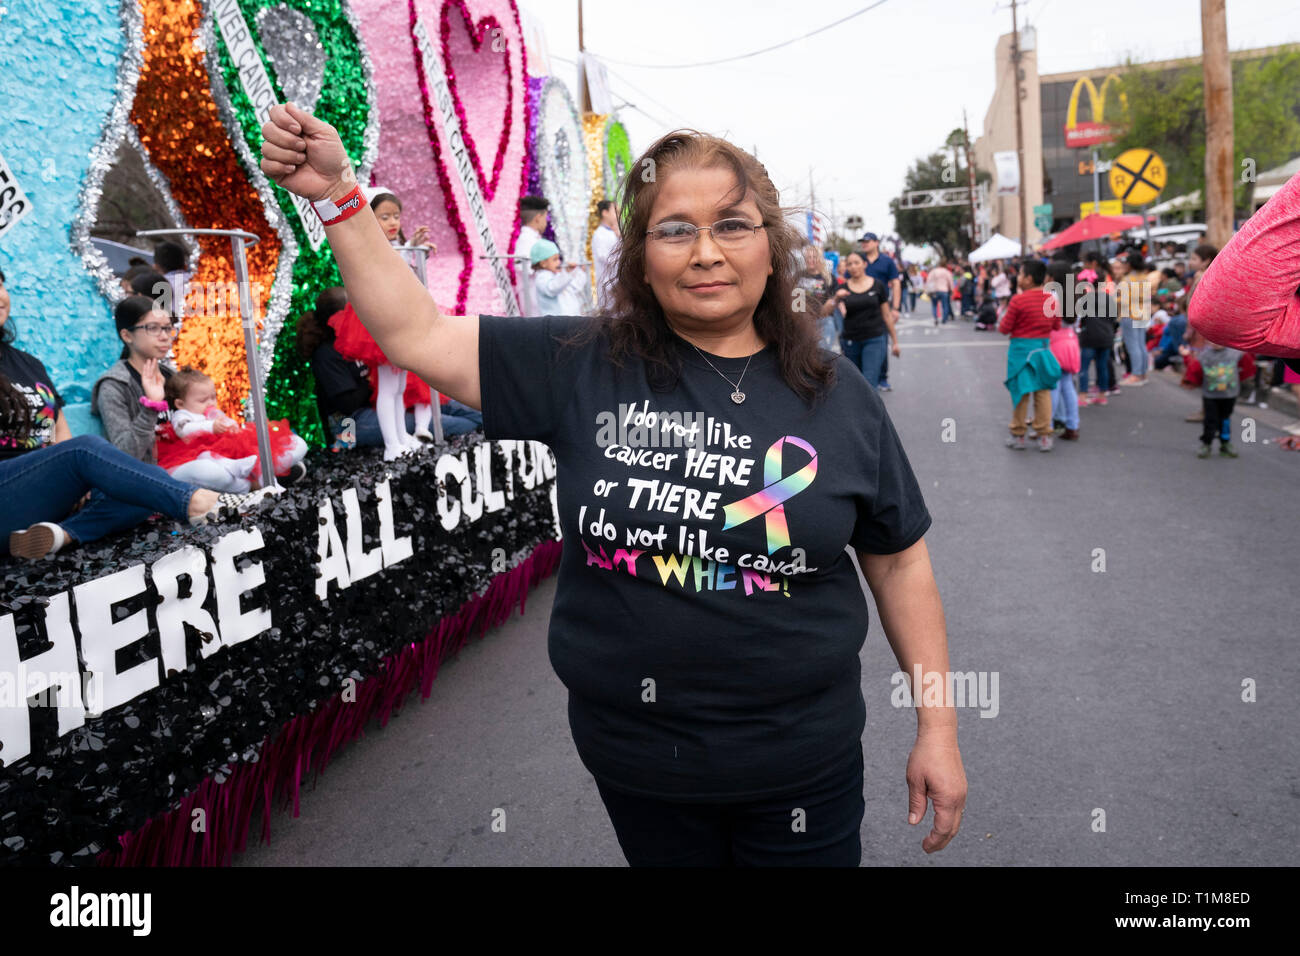 Hispanic Frau trägt Krebs - Bewusstsein t-shirt auf der Basis von Zeilen aus dem Buch von Dr. Seuss Kinder "grüne Eier und Schinken" an der Parade in der Innenstadt von Laredo, Texas. Stockfoto